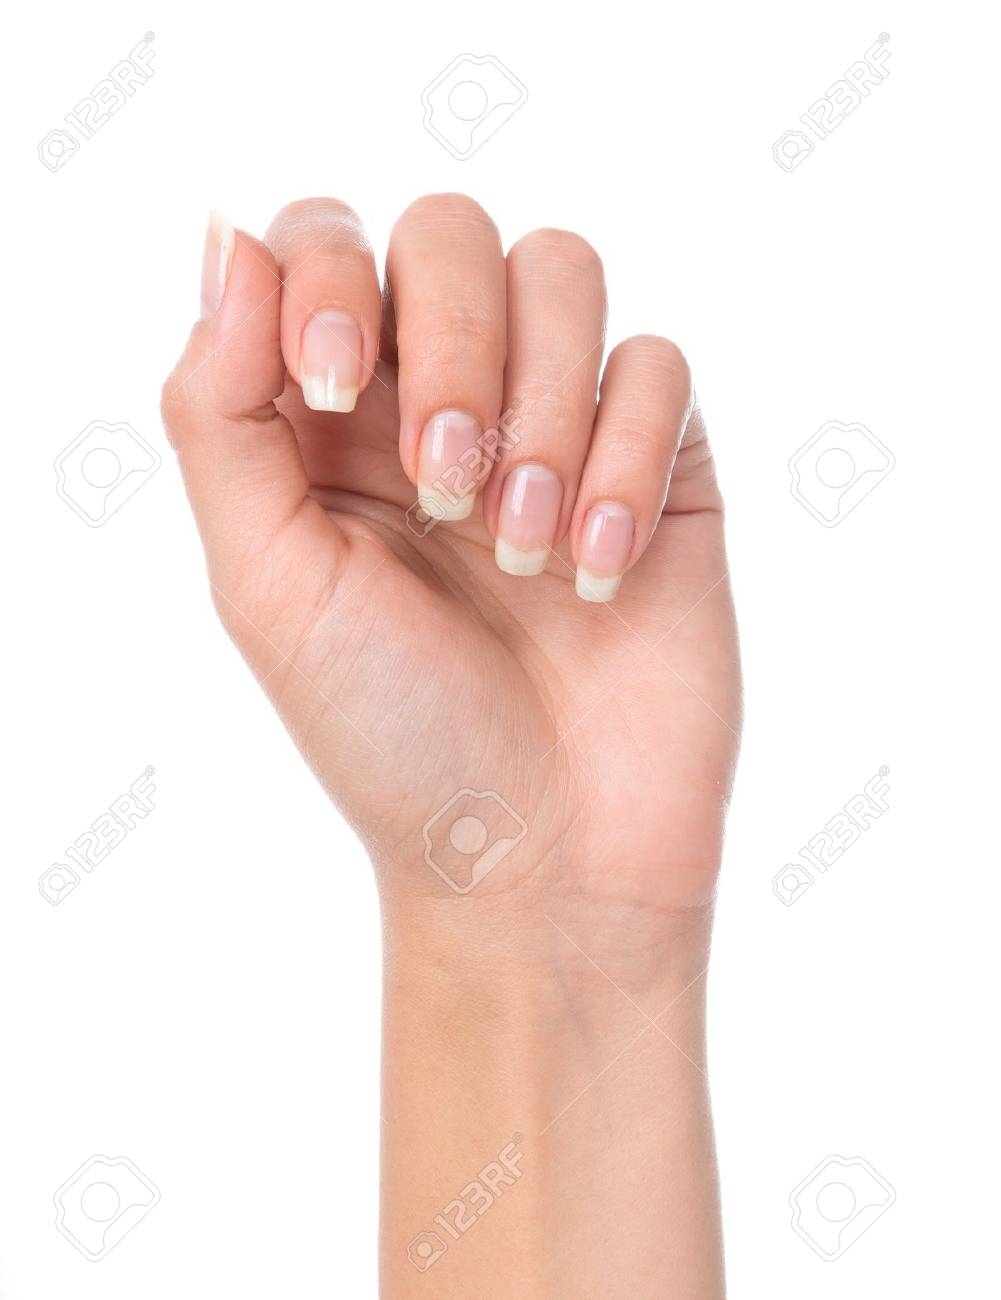 Женщины без пальцев на руках. Женская рука с ногтями. Рука с ногтями без маникюра. Руки с маникюром на белом фоне. Рука с ногтями на белом фоне.